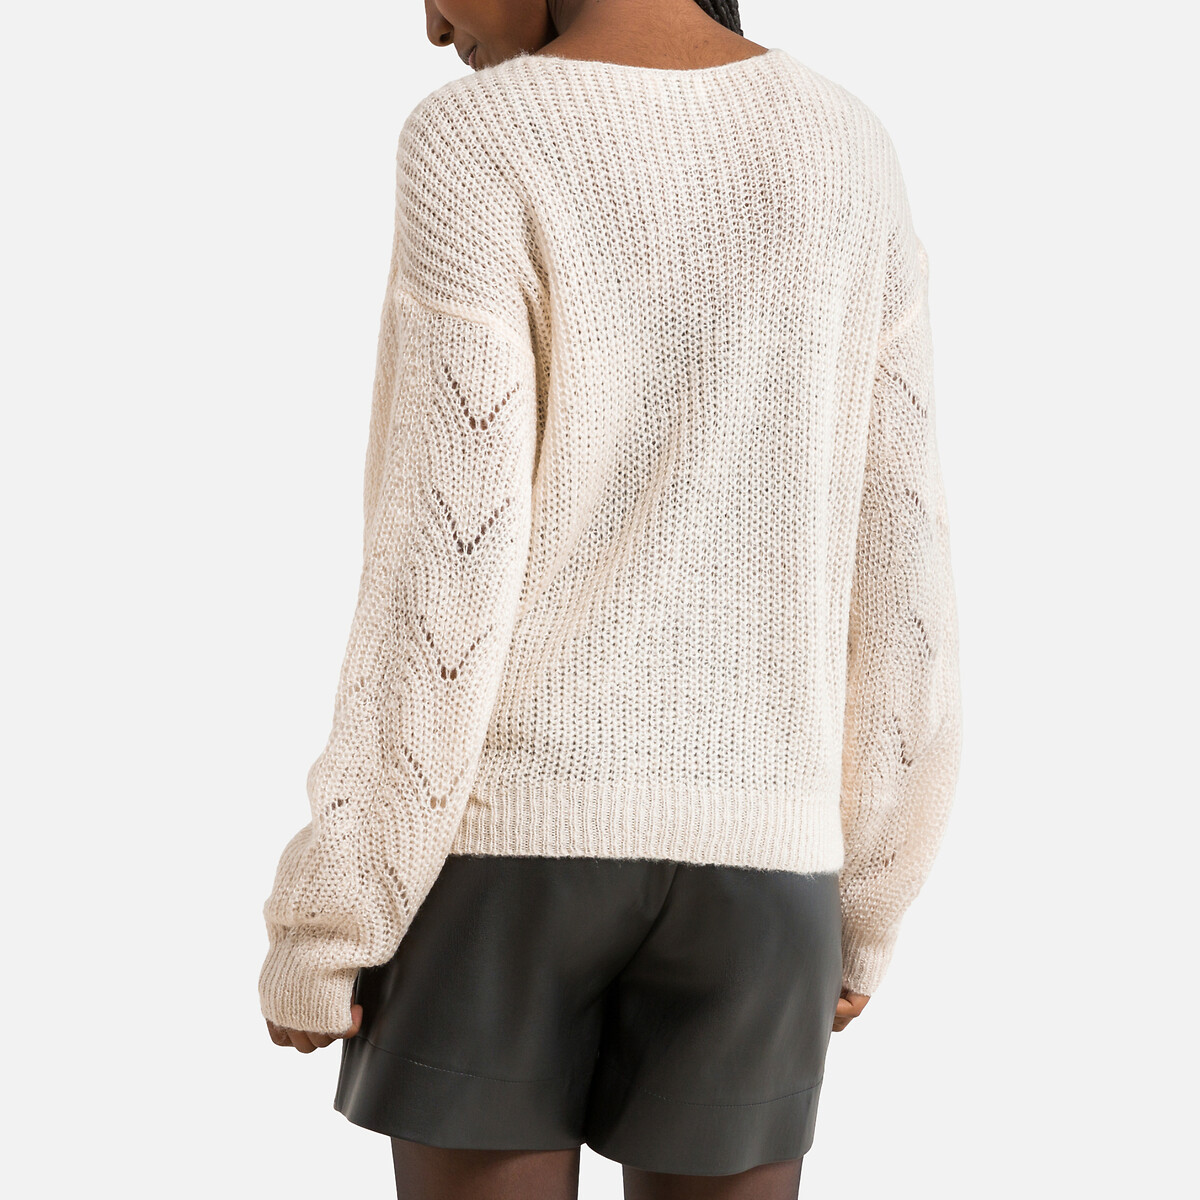 Пуловер С круглым вырезом из ажурного трикотажа S бежевый LaRedoute, размер S - фото 4